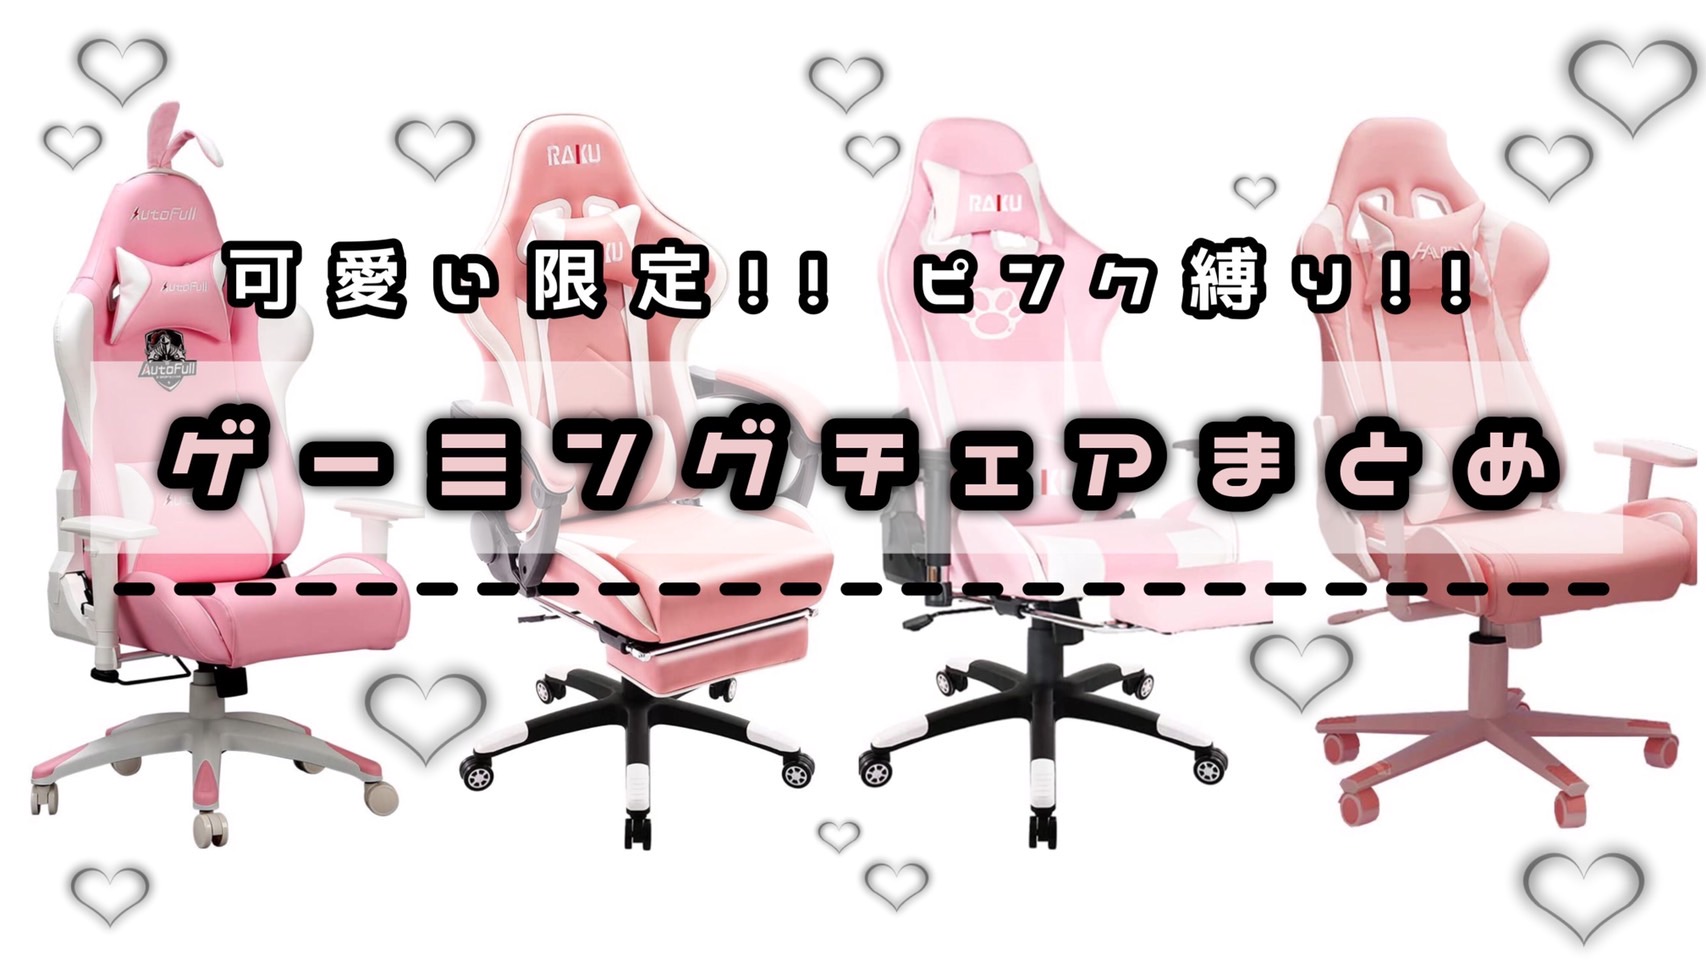 【翌日発送可能】 IODOOS ピンクゲーミングチェア オットマン付き gaming chair ゲーム用チェア ゲームチェア オフィスチェア パソコンチェア デスクチェア 180度リクライニング ハイバック クッション PUレザー ピンク 85AA